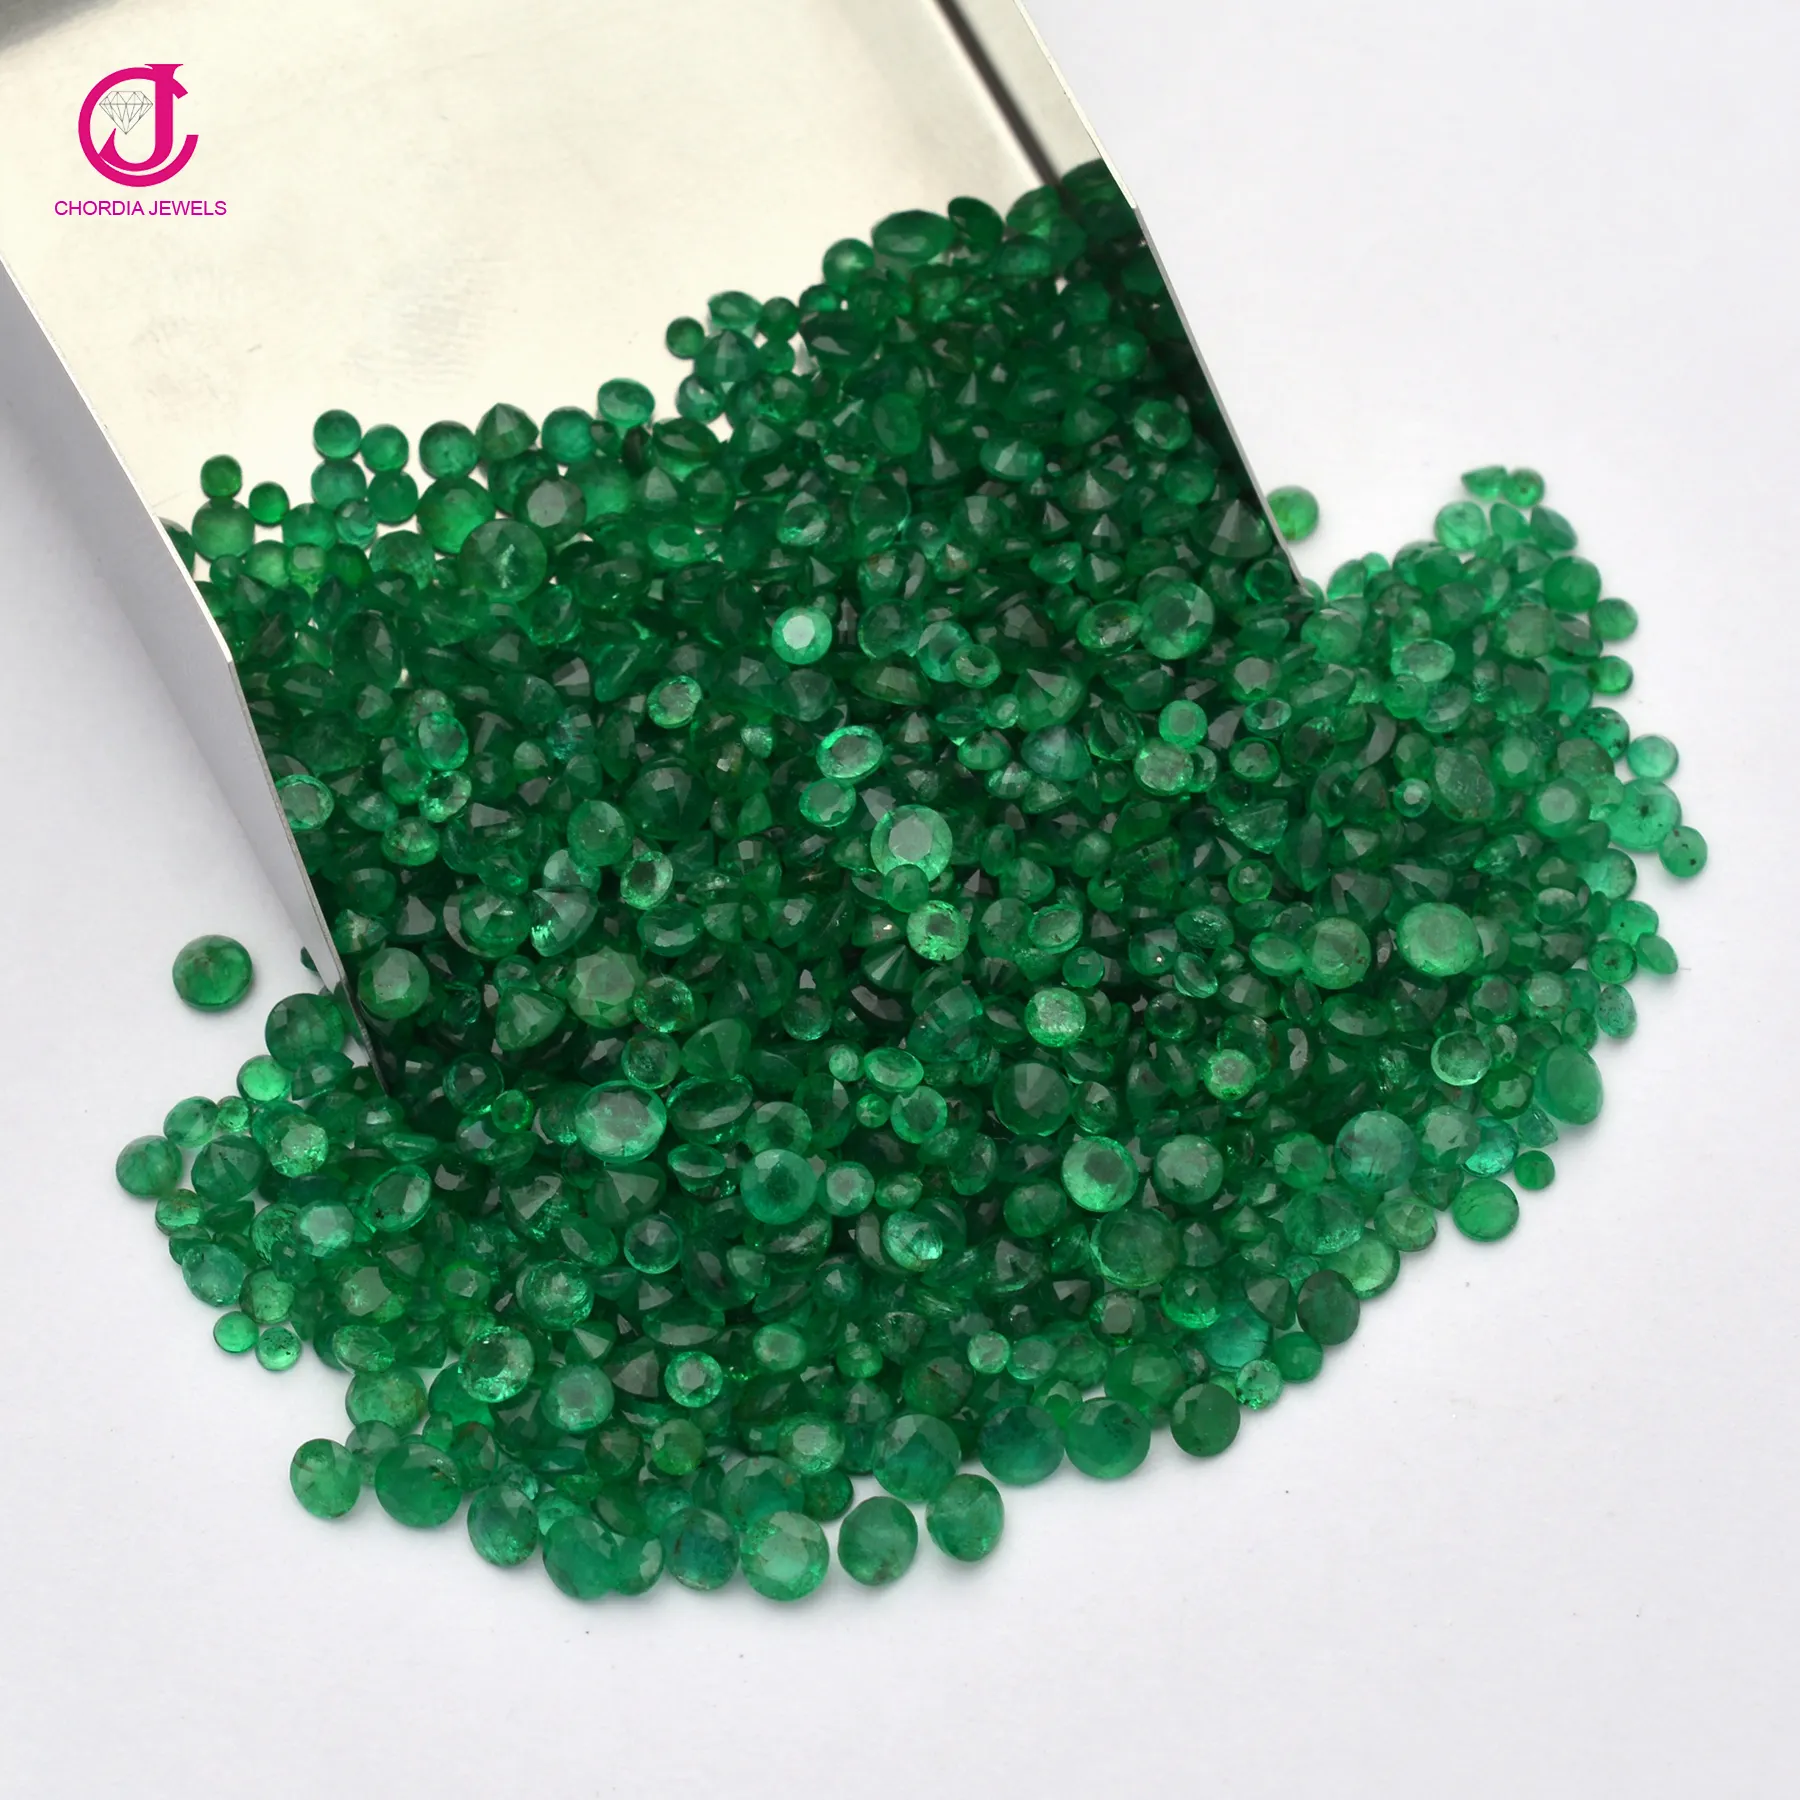 Ponta redonda corte preciosa pedra preciosa corte, atacado preço da índia natural CJ-EM-1-11 zm 1.5mm-2.5mm genuíno verde esmeralda